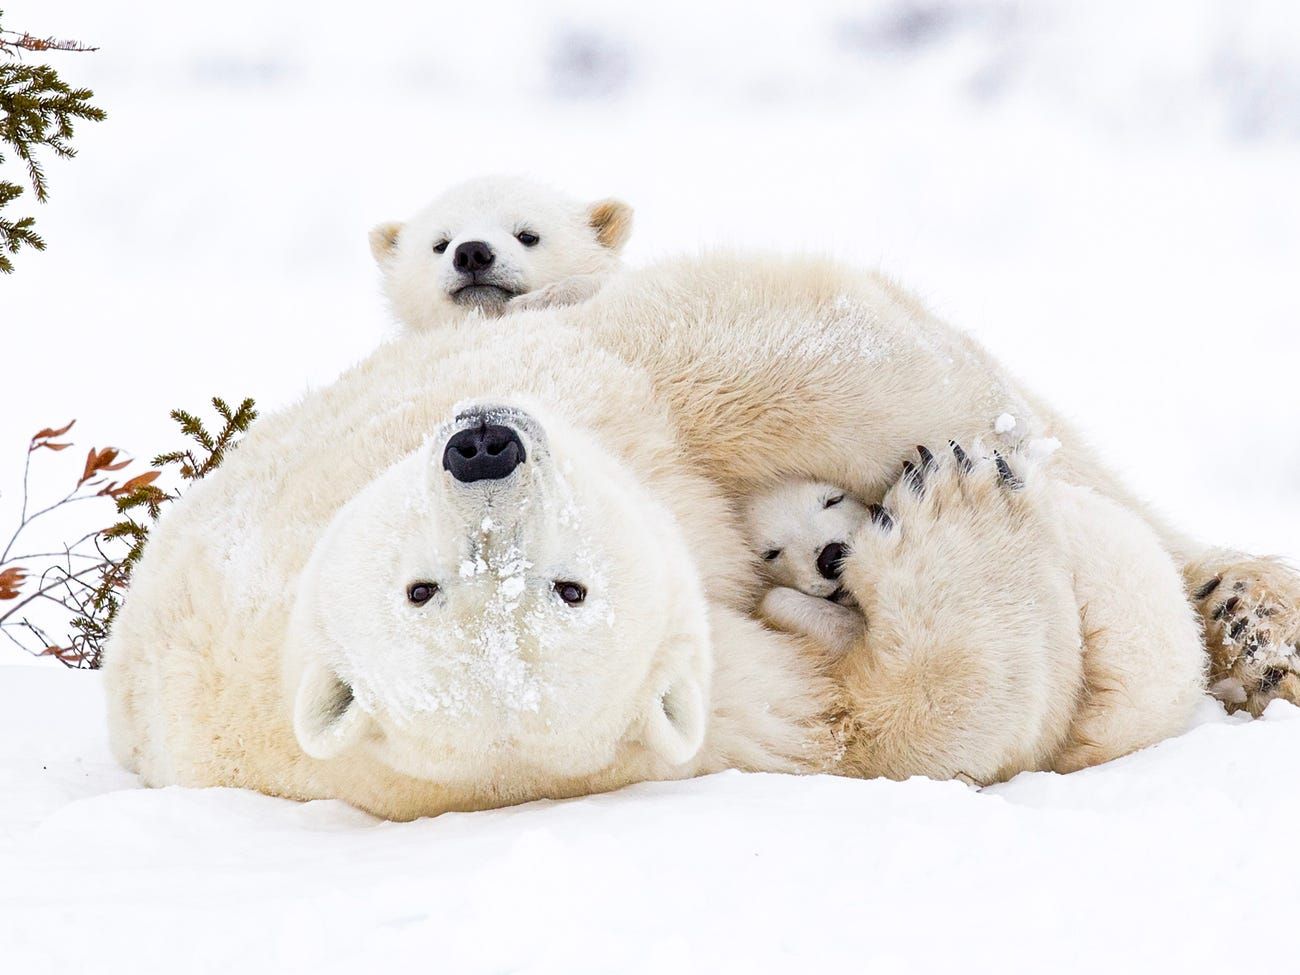 Nhiếp ảnh gấu Bắc cực xuất sắc sẽ giúp bạn hiểu rõ hơn về sự đa dạng và phong phú của loài động vật này. Nhiếp ảnh gia đã bắt được những khoảnh khắc đáng yêu của gấu Bắc cực: chúng đang ăn, ngủ hay chơi đùa cùng nhau. Những bức ảnh này sẽ khiến bạn phải trầm trồ vì đẹp!